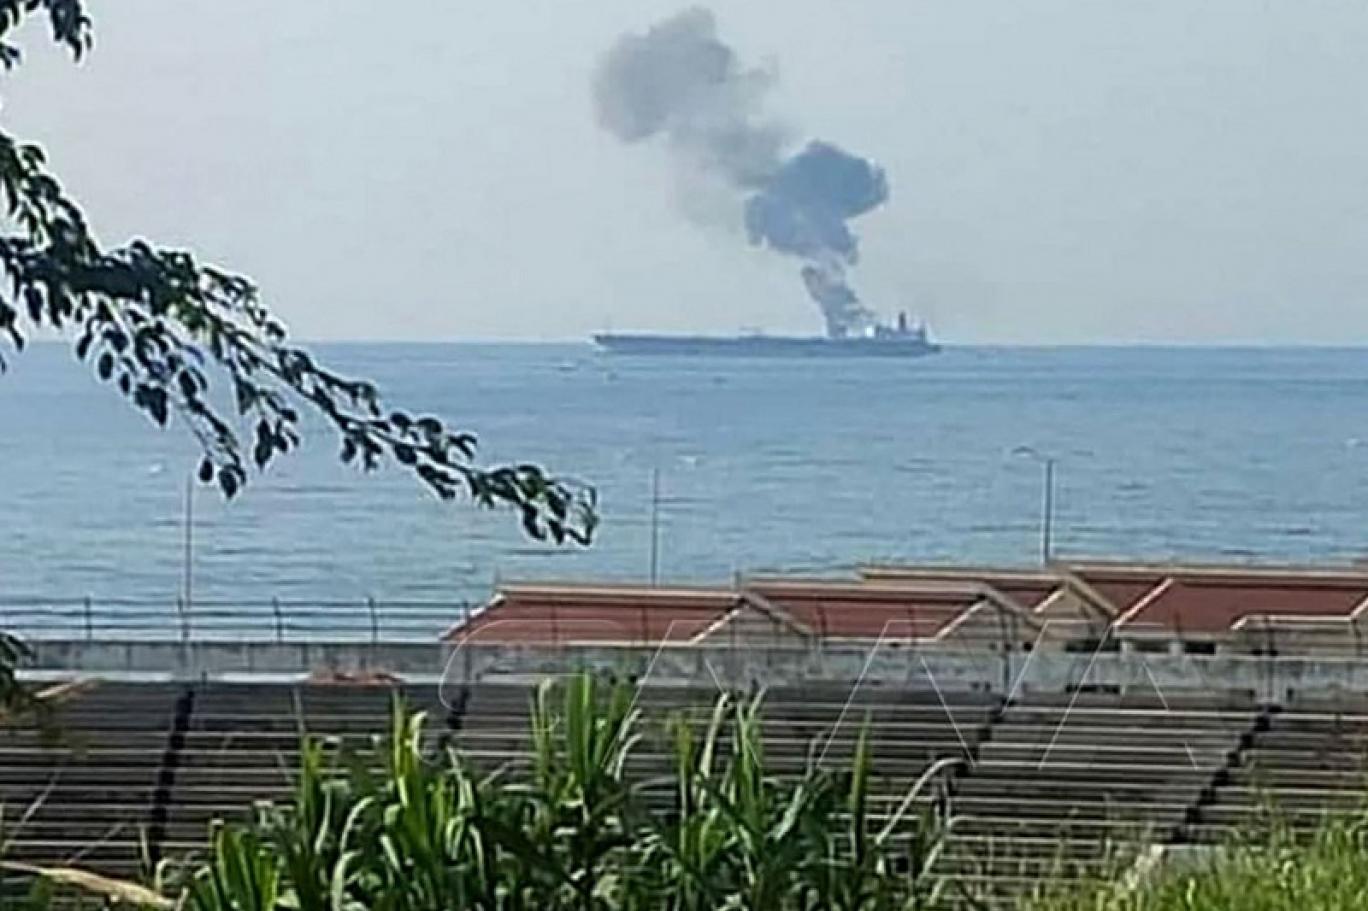 Một tàu chở dầu bị tấn công ở vùng biển ngoài khơi Syria - Ảnh 2.